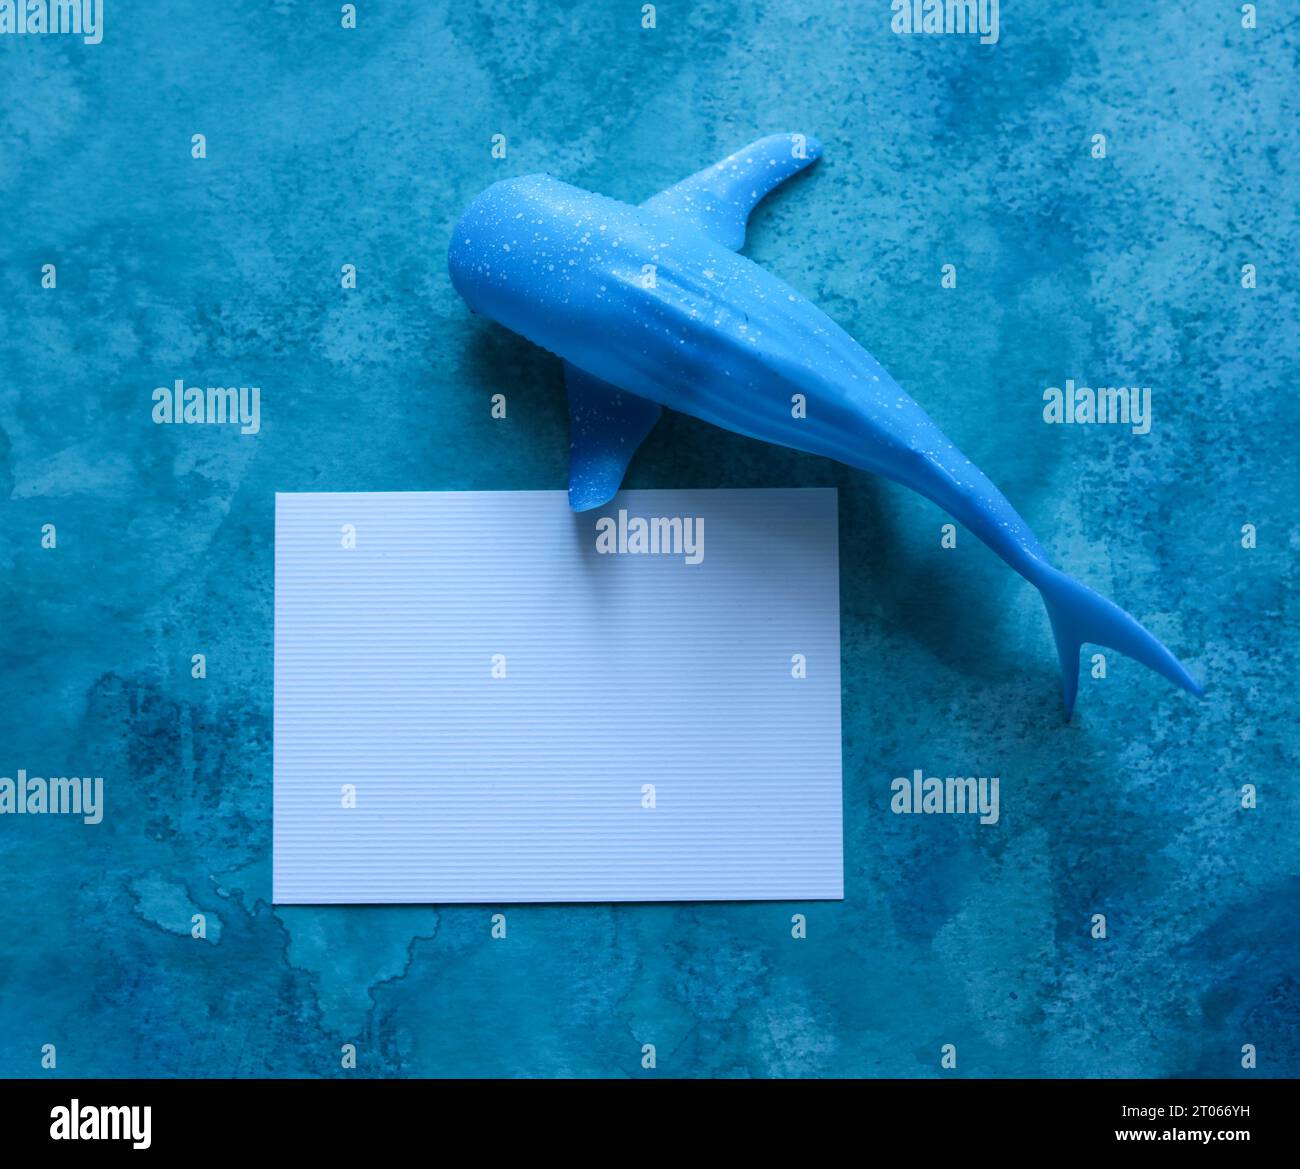 baleine jouet avec une carte de papier vierge avec un fond aquarelle bleu Banque D'Images